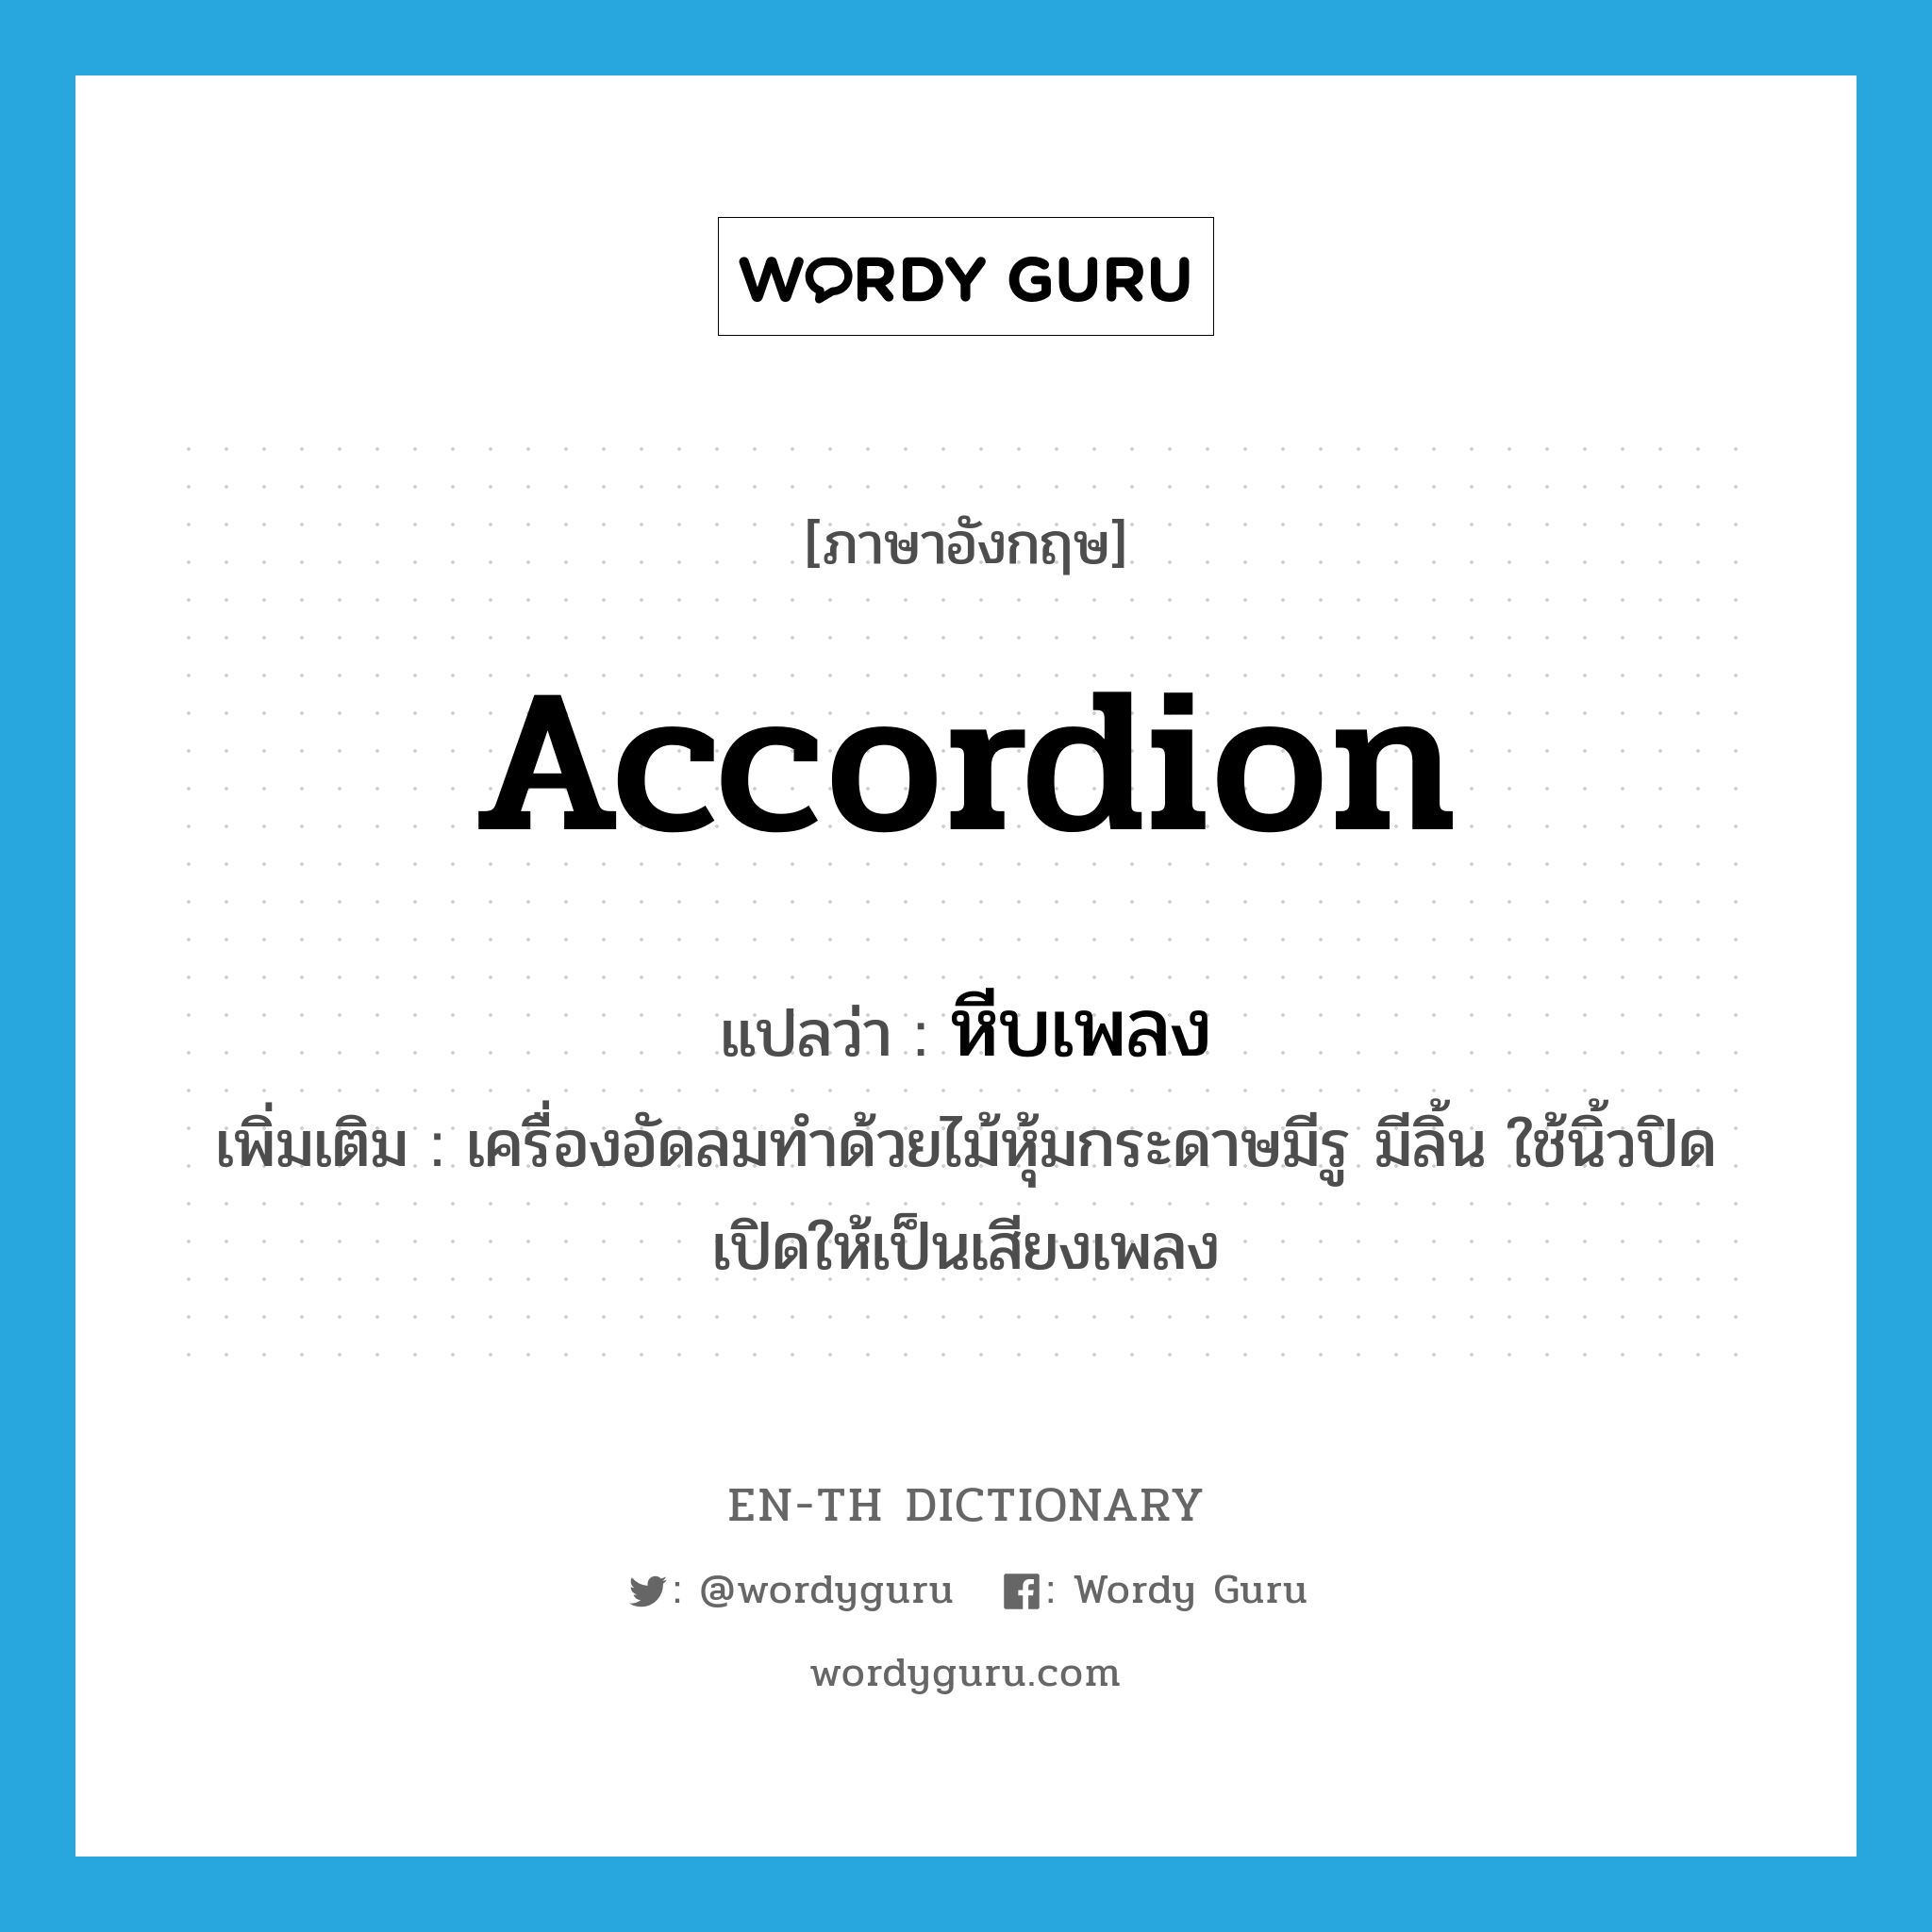 accordion แปลว่า?, คำศัพท์ภาษาอังกฤษ accordion แปลว่า หีบเพลง ประเภท N เพิ่มเติม เครื่องอัดลมทำด้วยไม้หุ้มกระดาษมีรู มีลิ้น ใช้นิ้วปิดเปิดให้เป็นเสียงเพลง หมวด N